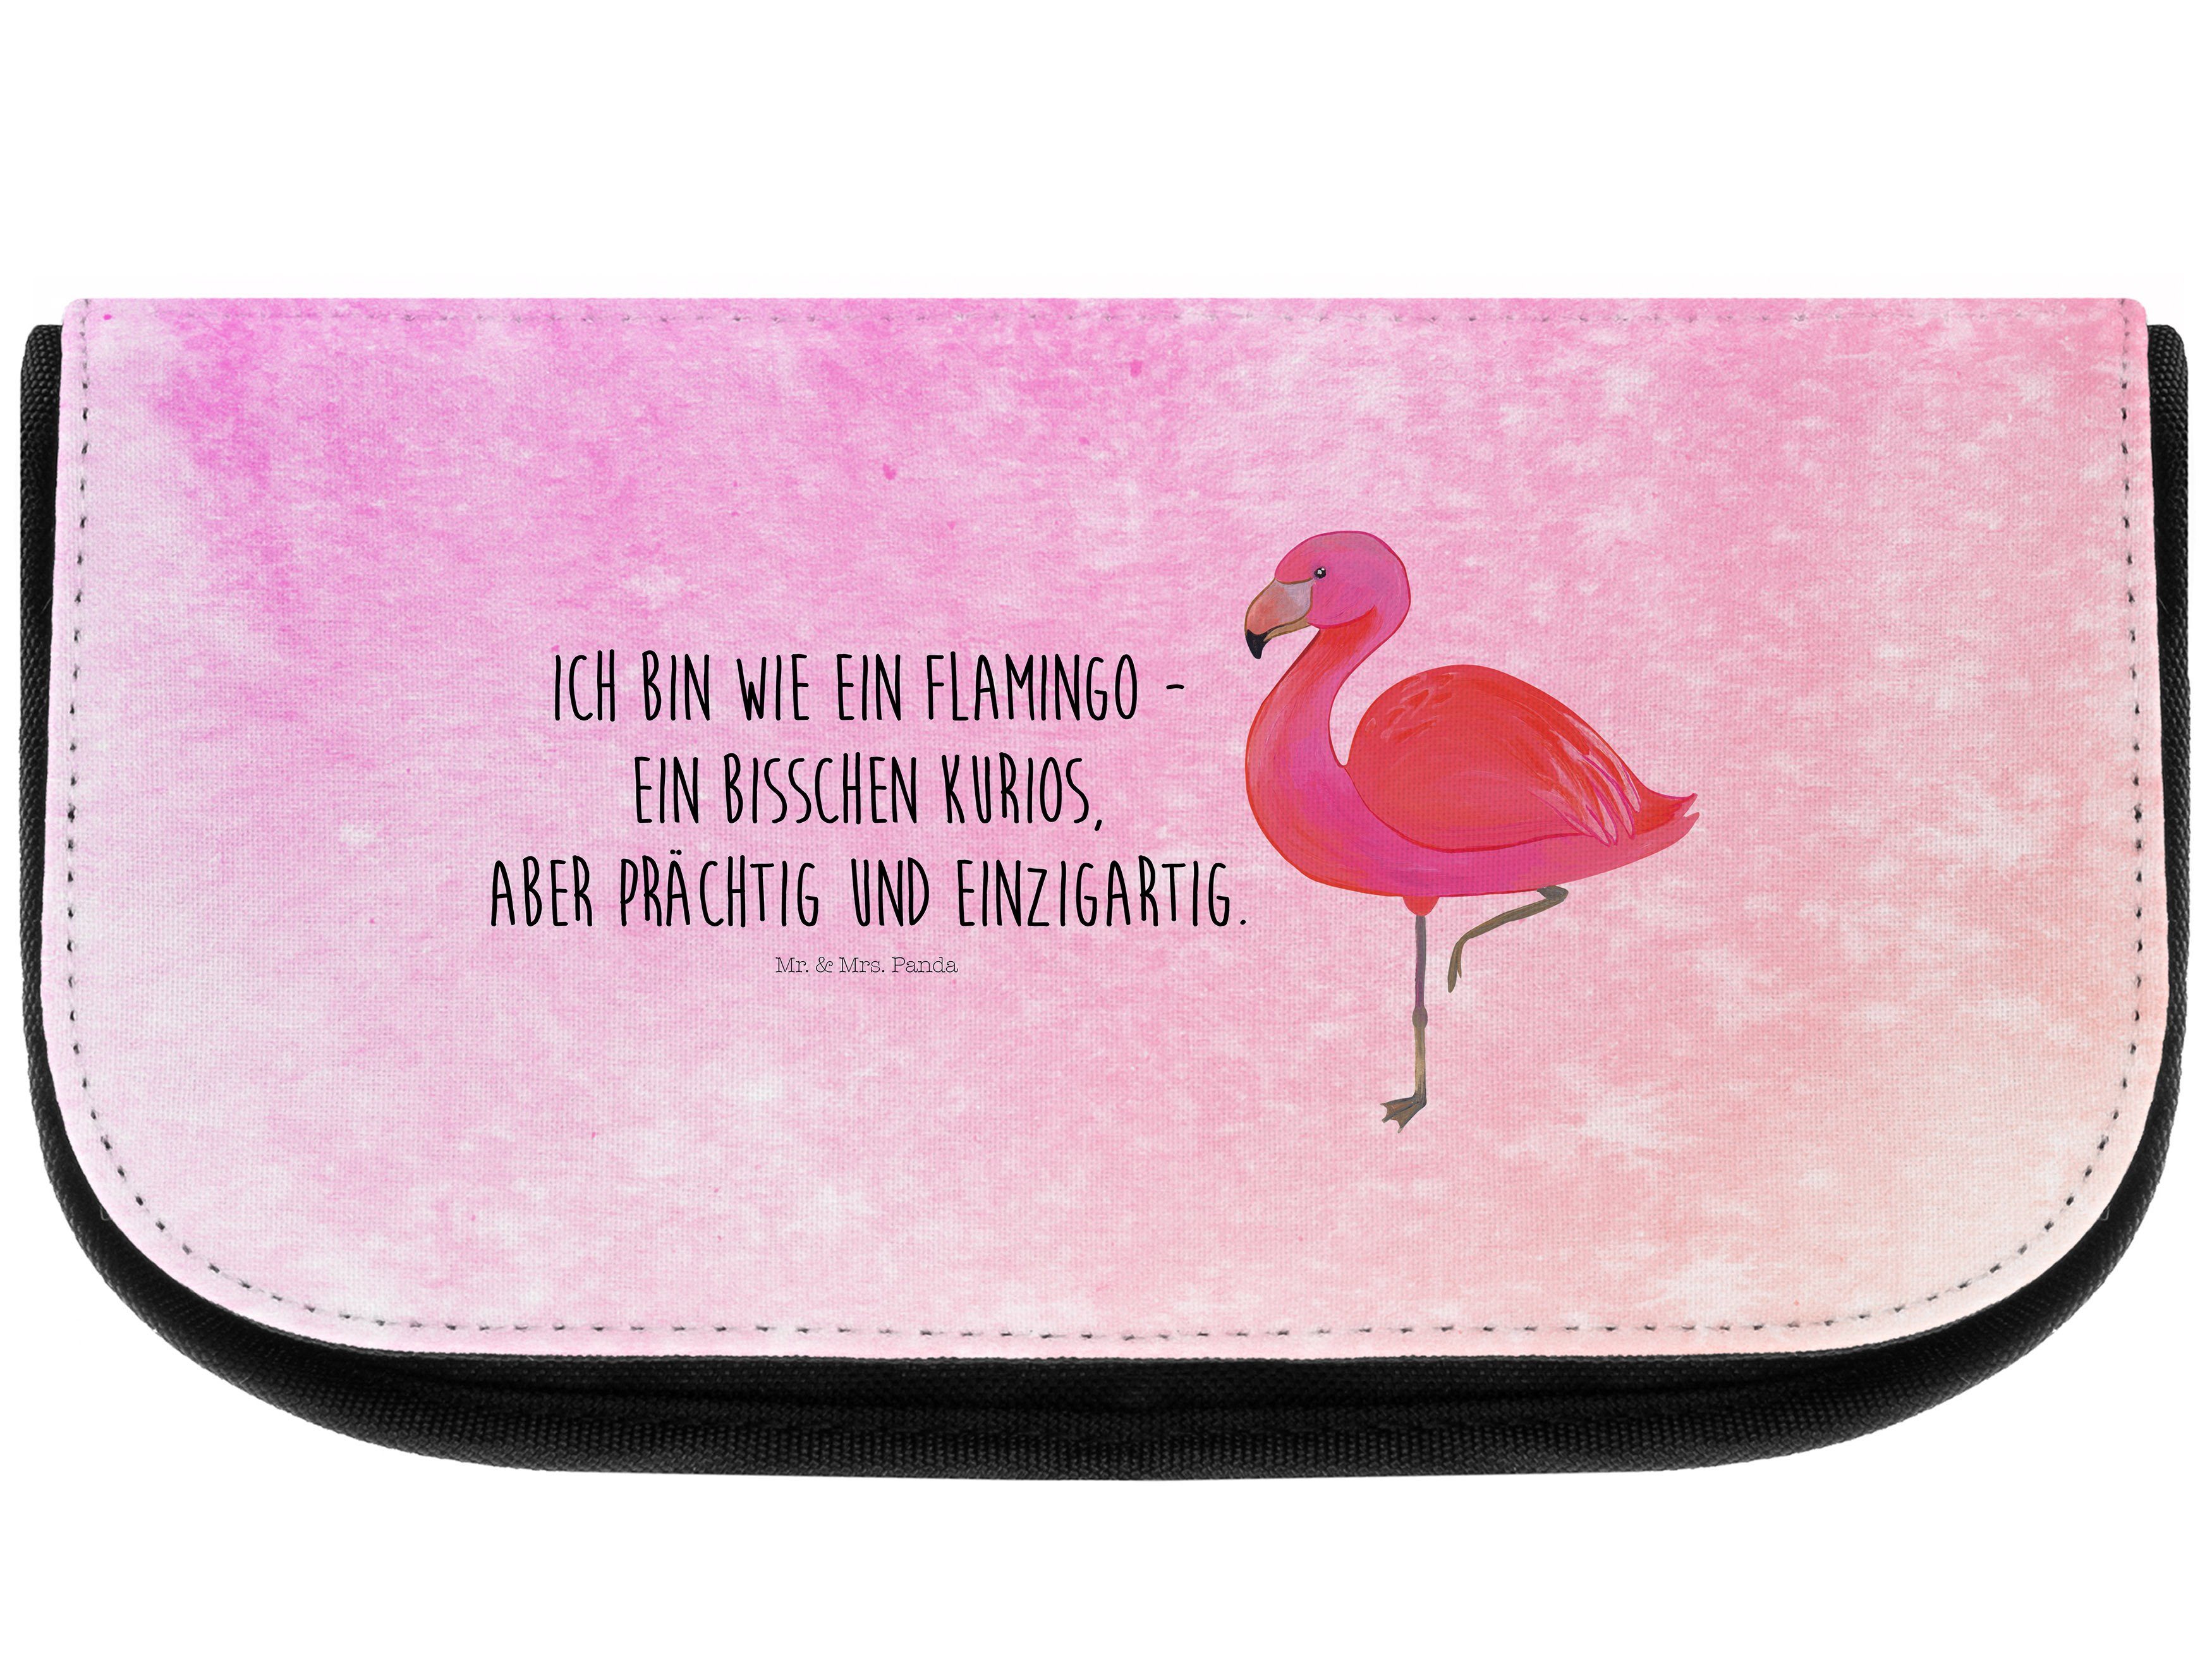 Damen Kulturbeutel Mr. & Mrs. Panda Kosmetiktasche Flamingo classic - Aquarell Pink - Geschwister, Freundin, stolz, Make-Up Tasc